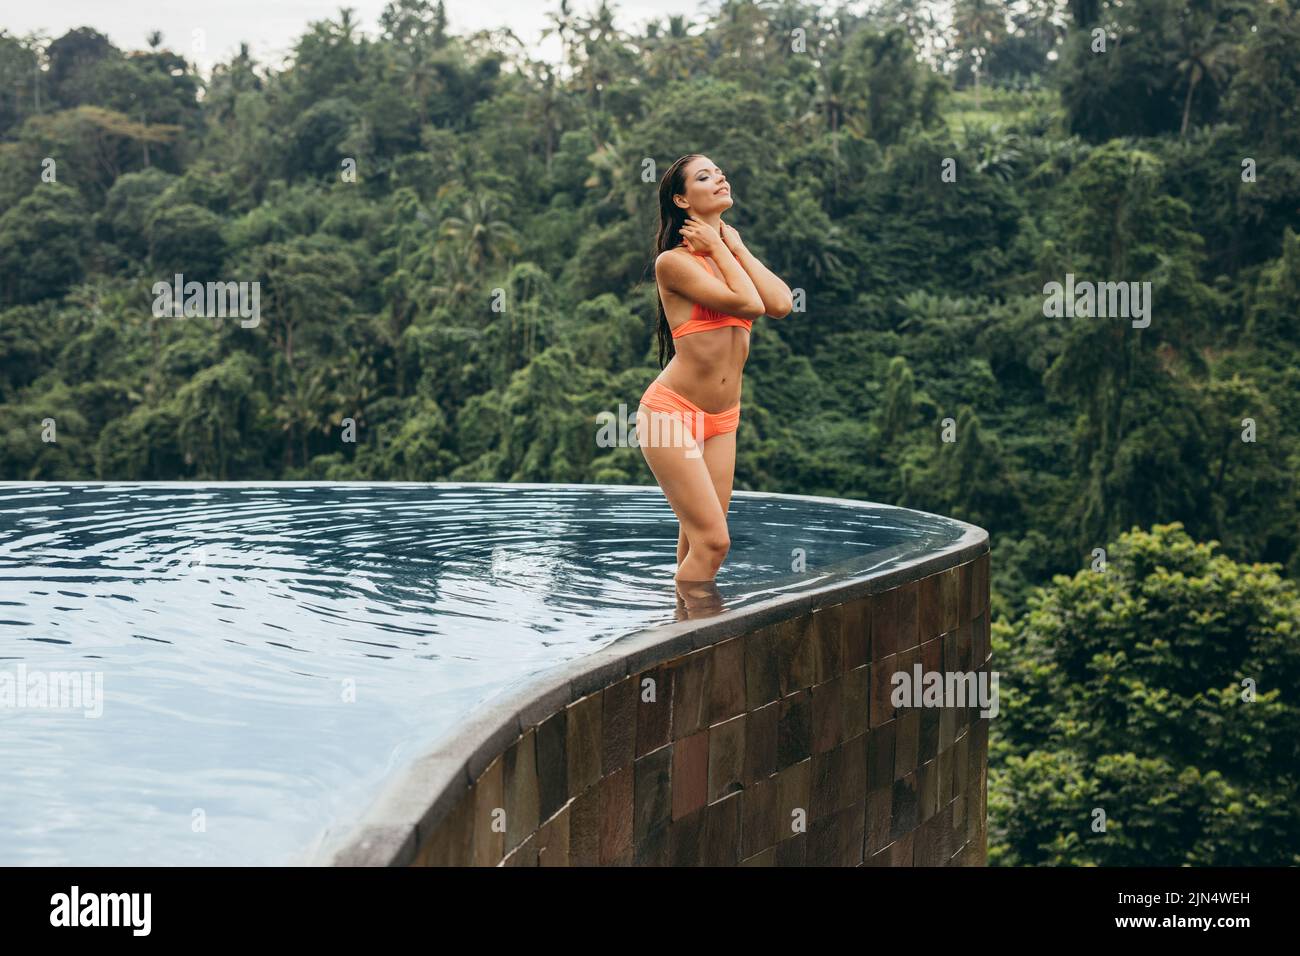 Foto de una mujer joven que llevaba un bikini naranja en la piscina, en el complejo vacacional. Disfrutando de sus vacaciones en la piscina. Foto de stock